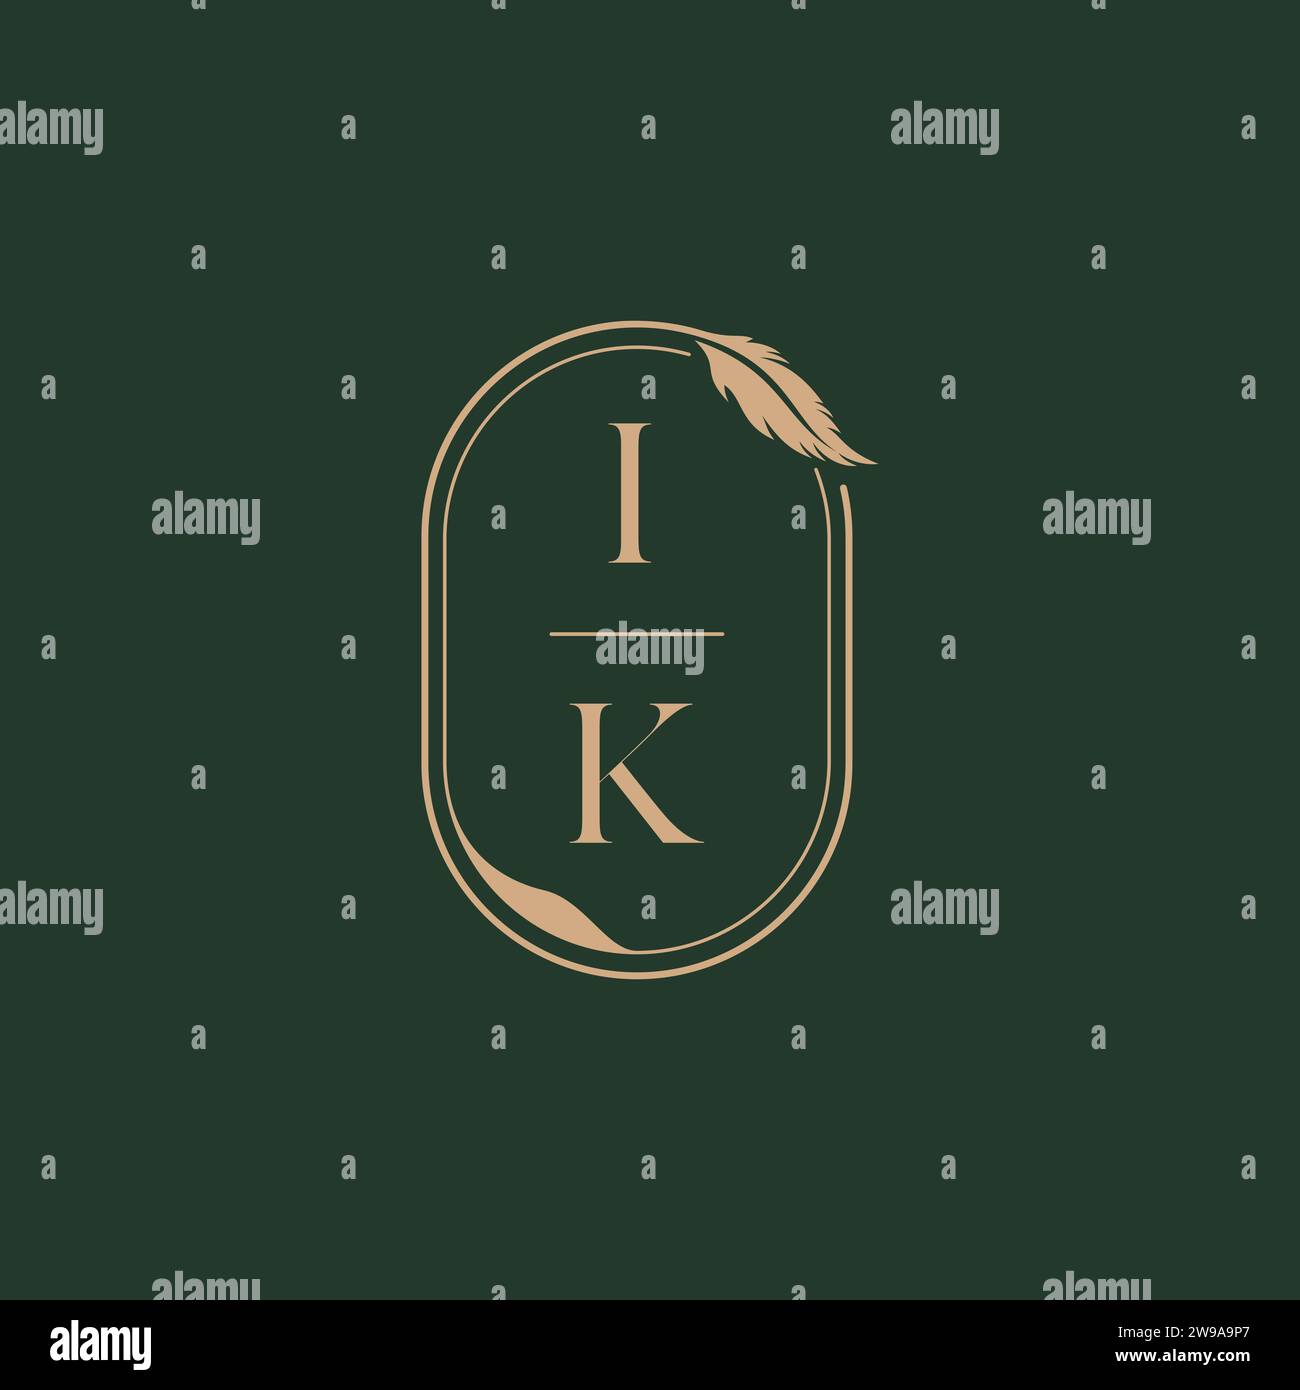 IK feather concept wedding monogram logo design ideas as inspiration Stock Vector